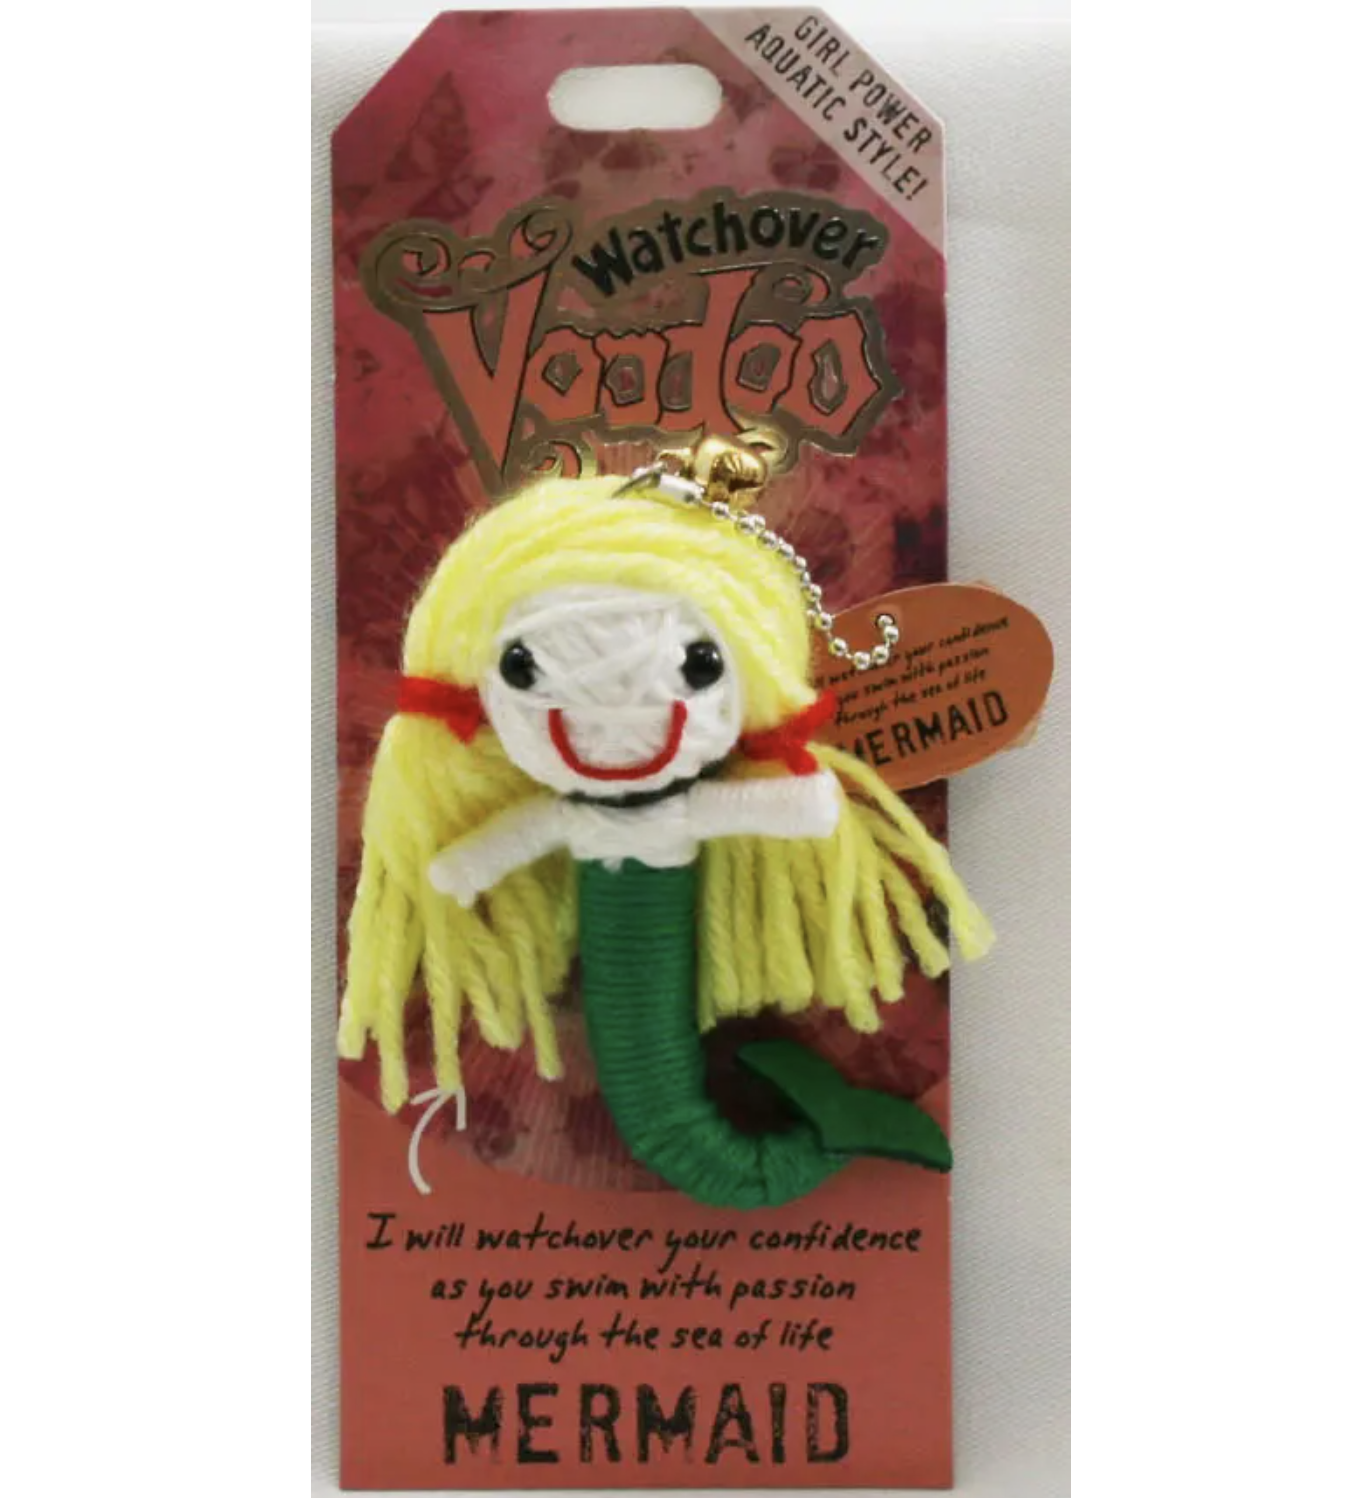 Mermaid Voodoo Doll